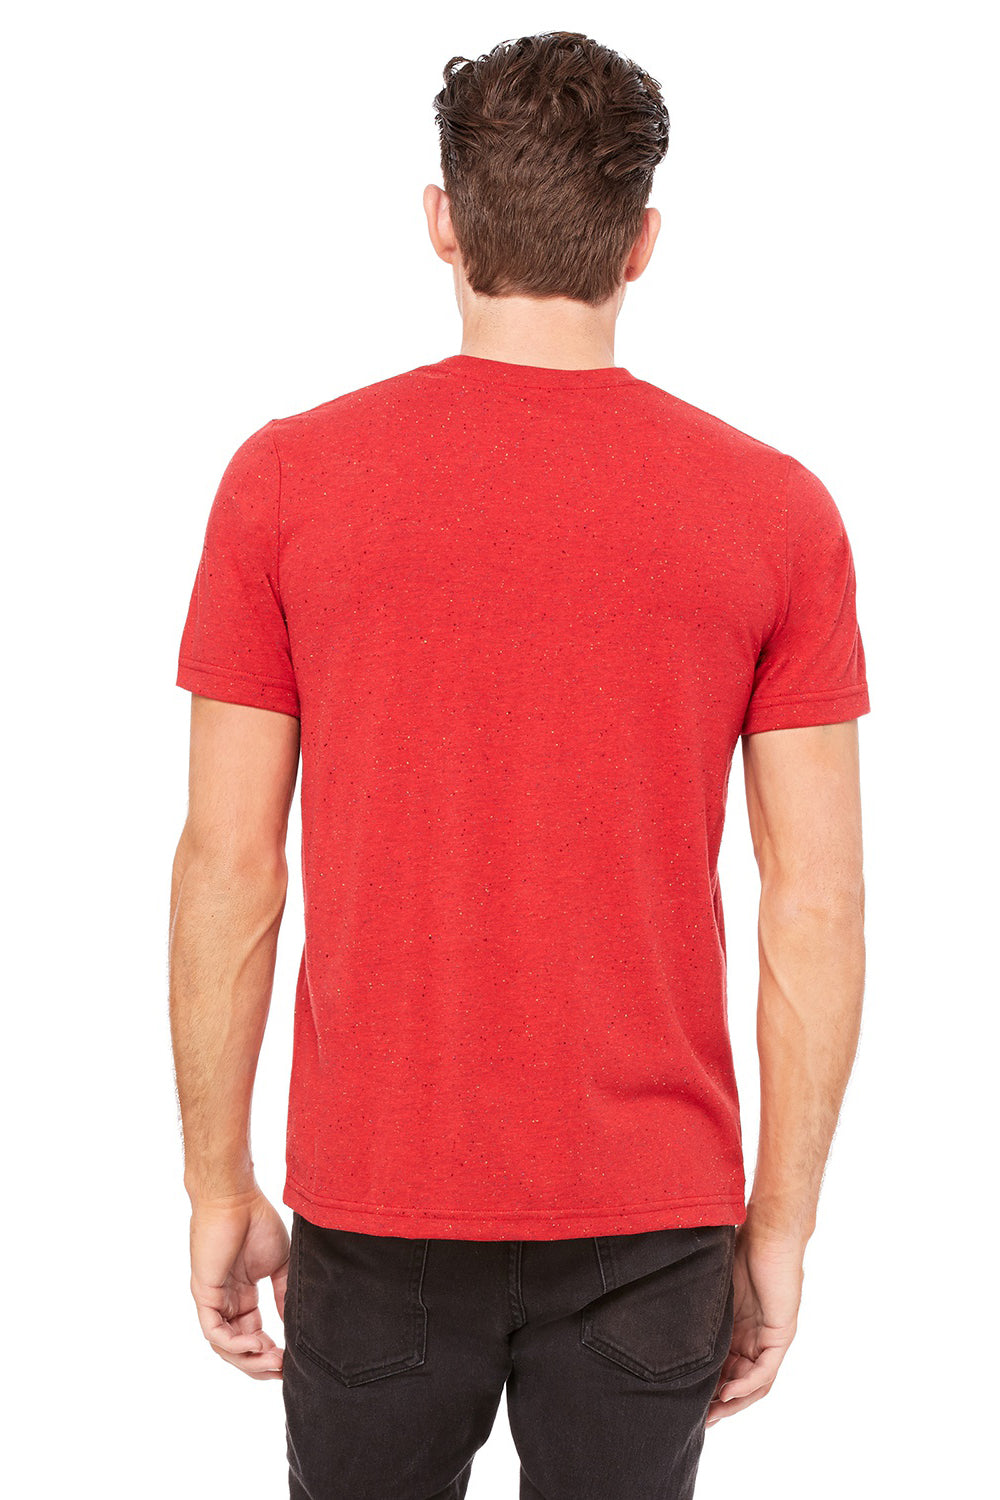 Bella + Canvas 3650 Mens Short Sleeve Crewneck T-Shirt Red Speckled Back